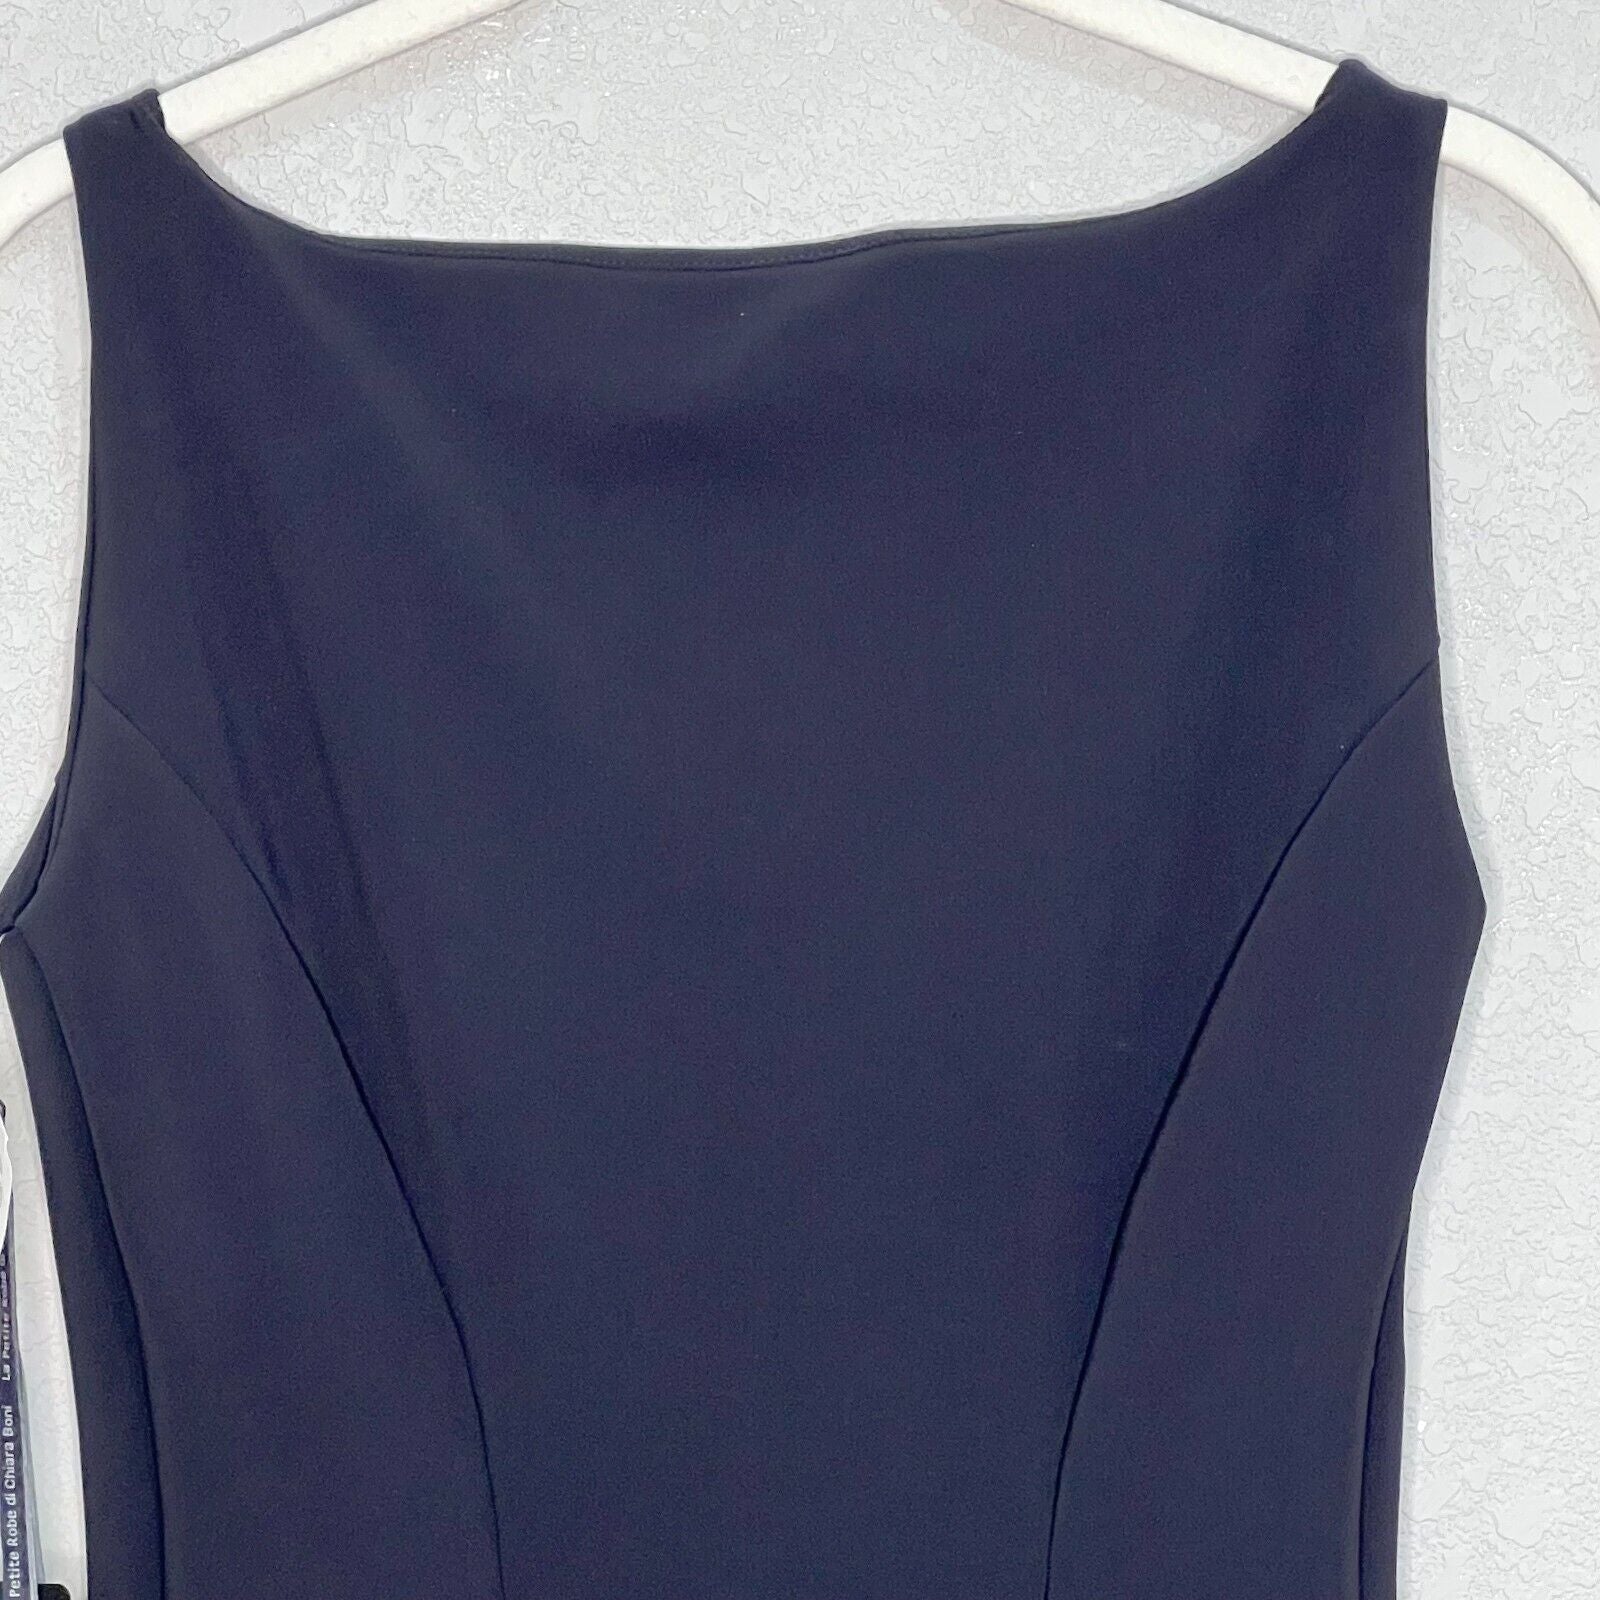 La Petit Robe di Chiara Bondi Black LBD Sleeveless Bodycon Dress Size 6 NEW $515